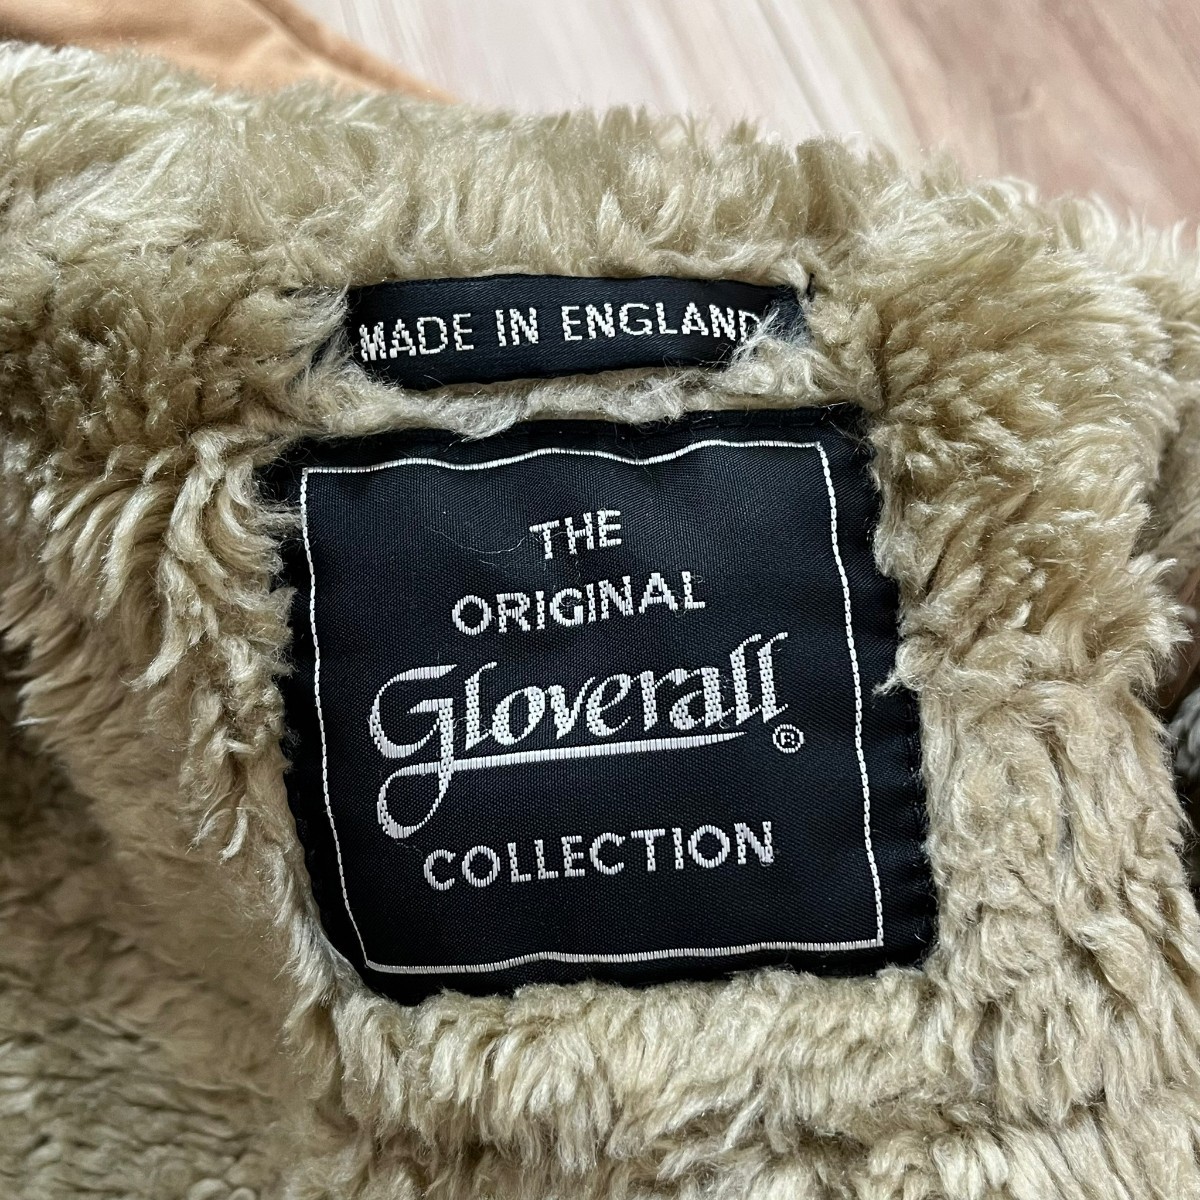 THE ORIGINAL gloverall COLLECTIONji оригинал g Rover все коллекция полупальто "даффл коут" внешний обратная сторона ворсистый защищающий от холода Kids размер 140